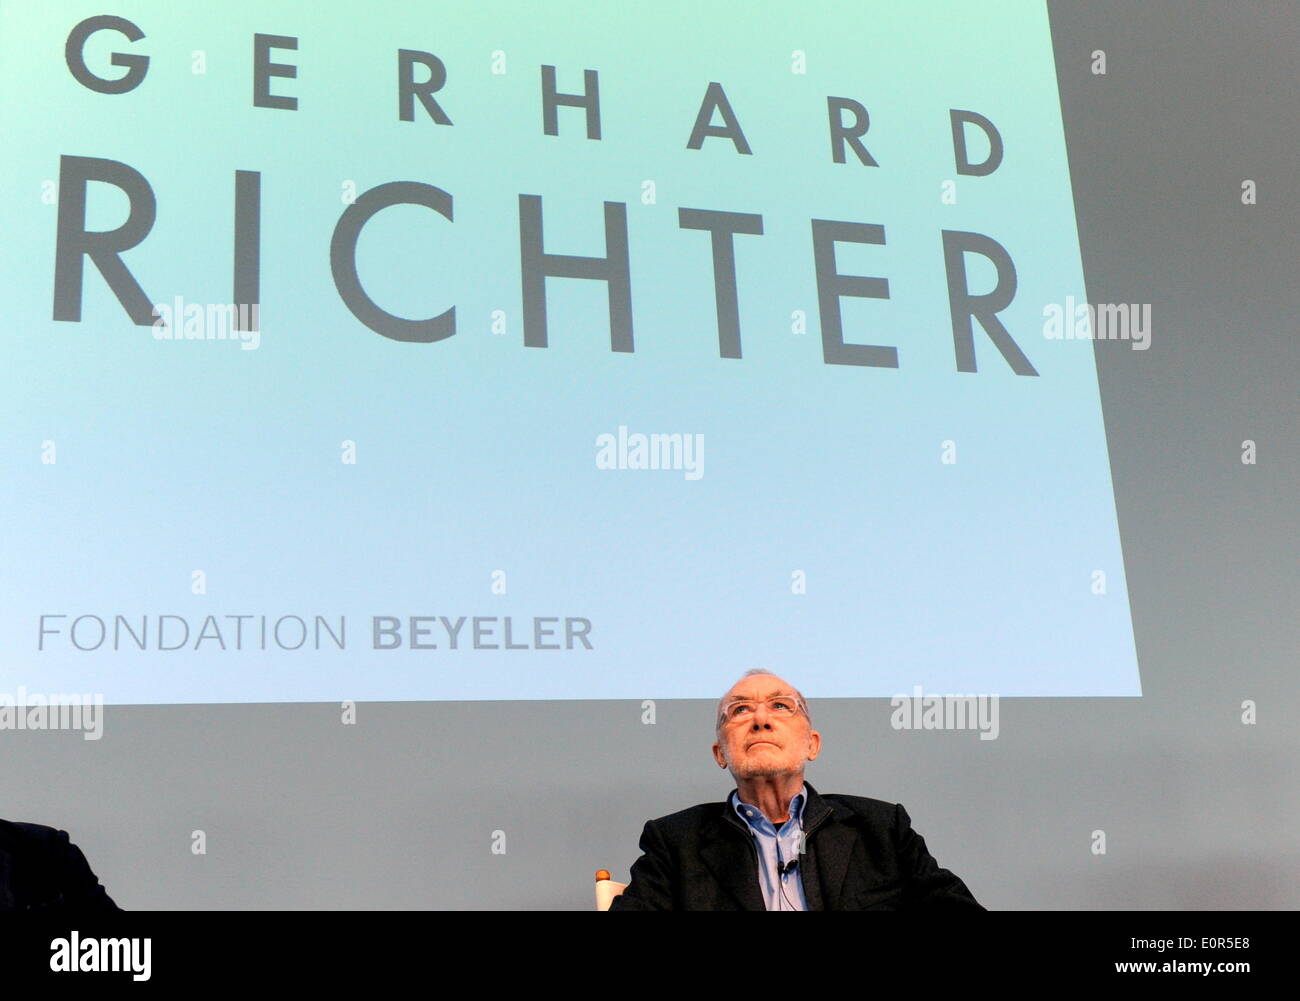 L'artiste allemand Gerhard Richter assis au cours d'une conférence de presse à l'occasion de l'ouverture d'une nouvelle exposition à la Fondation Beyeler à Riehen près de Bâle (Suisse) devant son nom, projetée sur un mur derrière lui, le 16 mai 2014. Banque D'Images